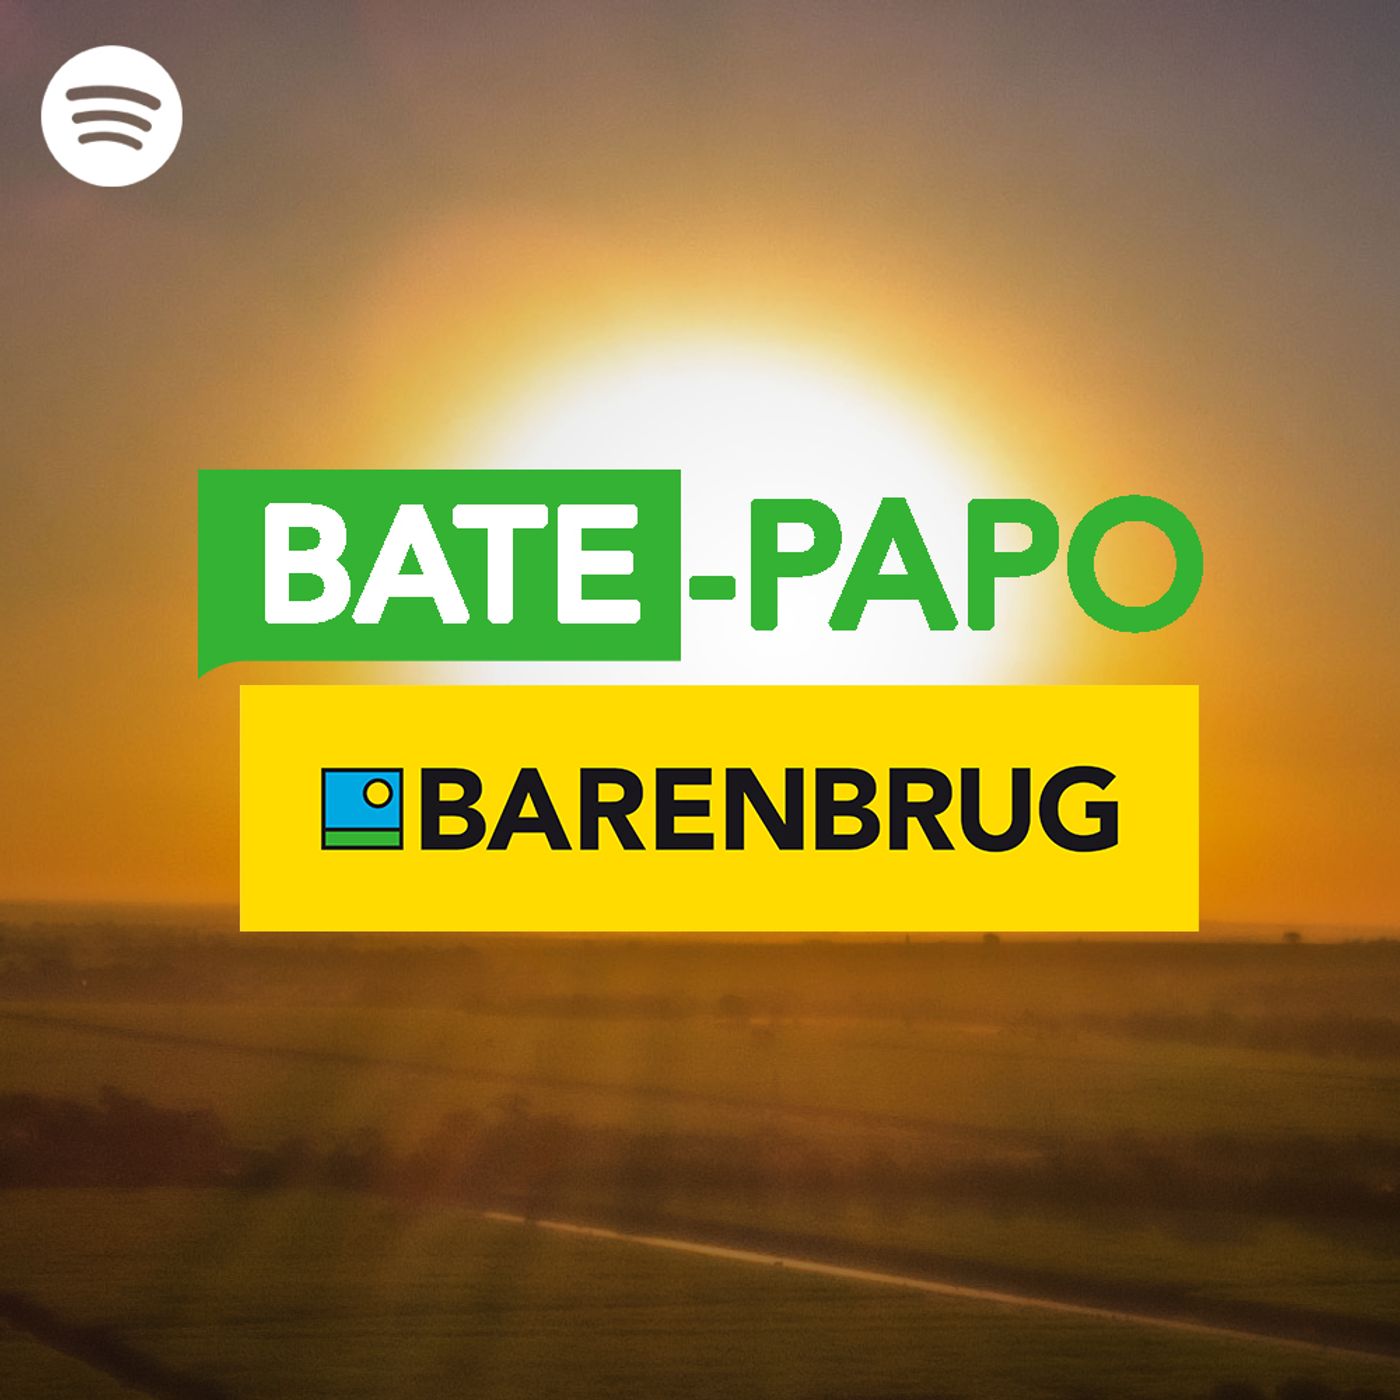 Bate-Papo Barenbrug: Tendências do Agronegócio